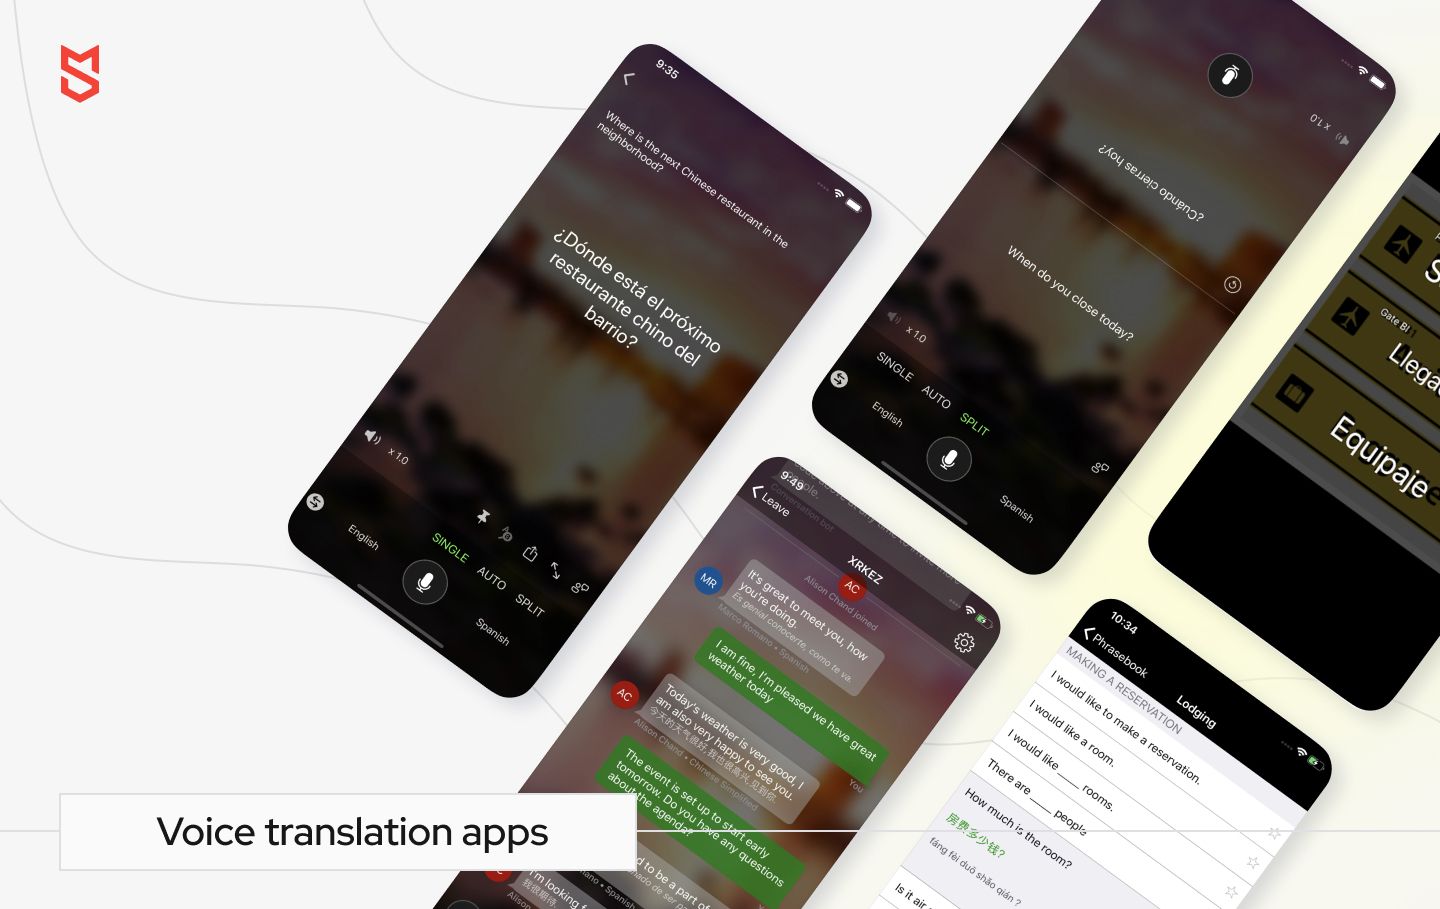 Voice translation apps